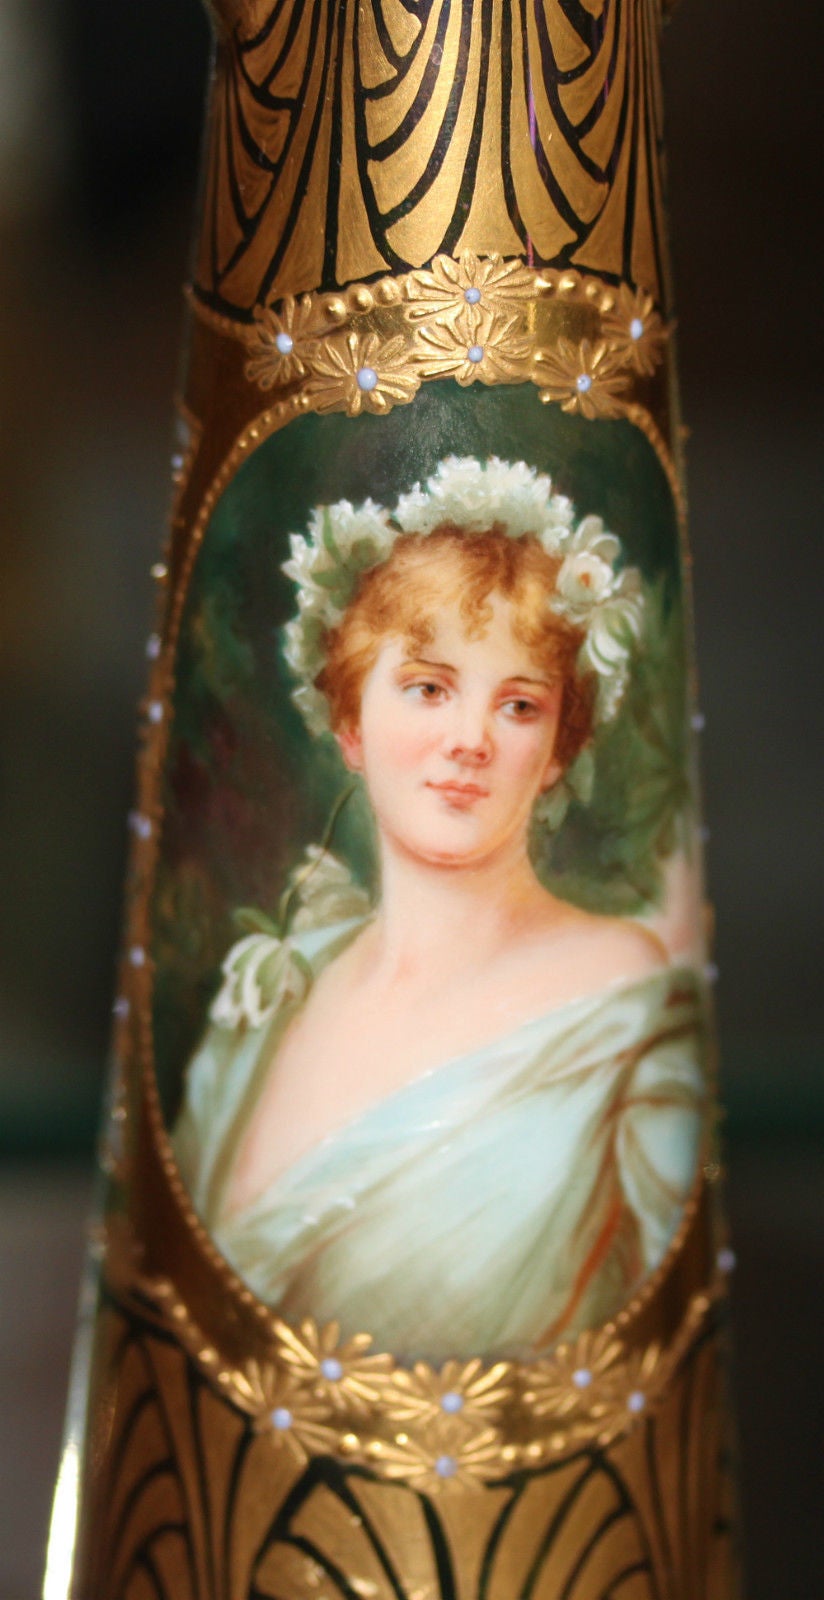 Un très beau vase irisé à double poignée en forme de bijou de l'Art Nouveau de Dresde du 19ème siècle.

Intitulé : Wasserrose.

Dimensions : Hauteur : 7 1/4